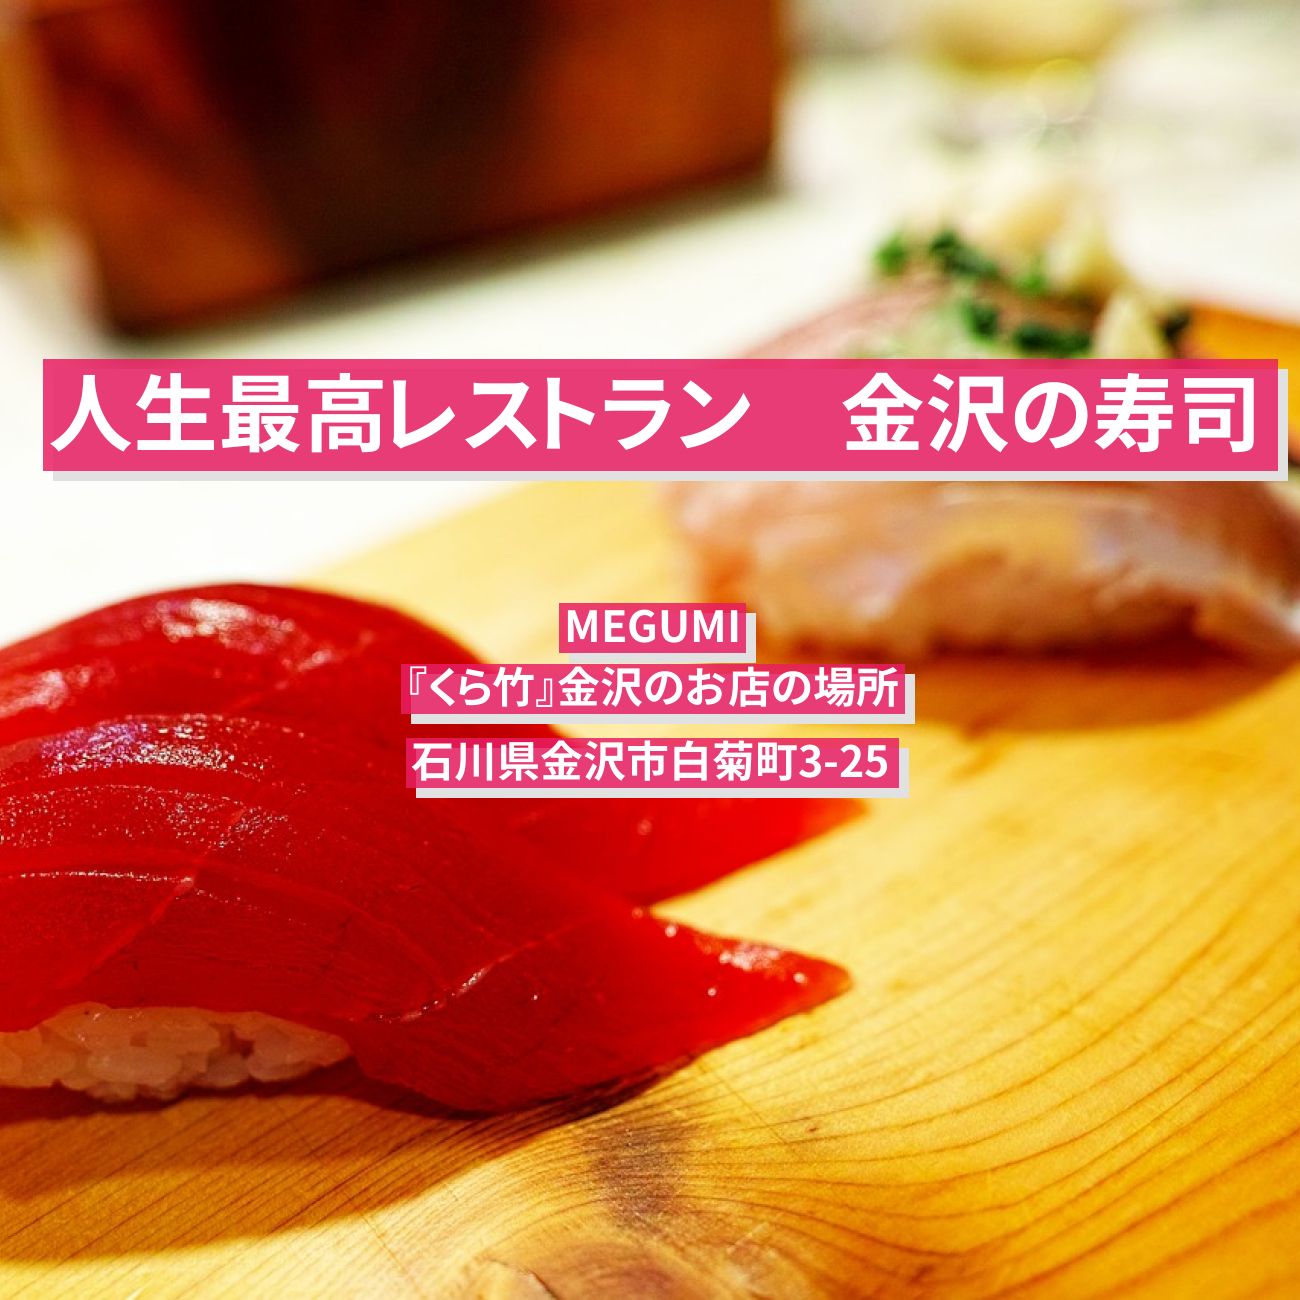 【人生最高レストラン】金沢の寿司(イカ大葉・ノドグロの蒸し寿司)MEGUMI『くら竹』金沢のお店の場所